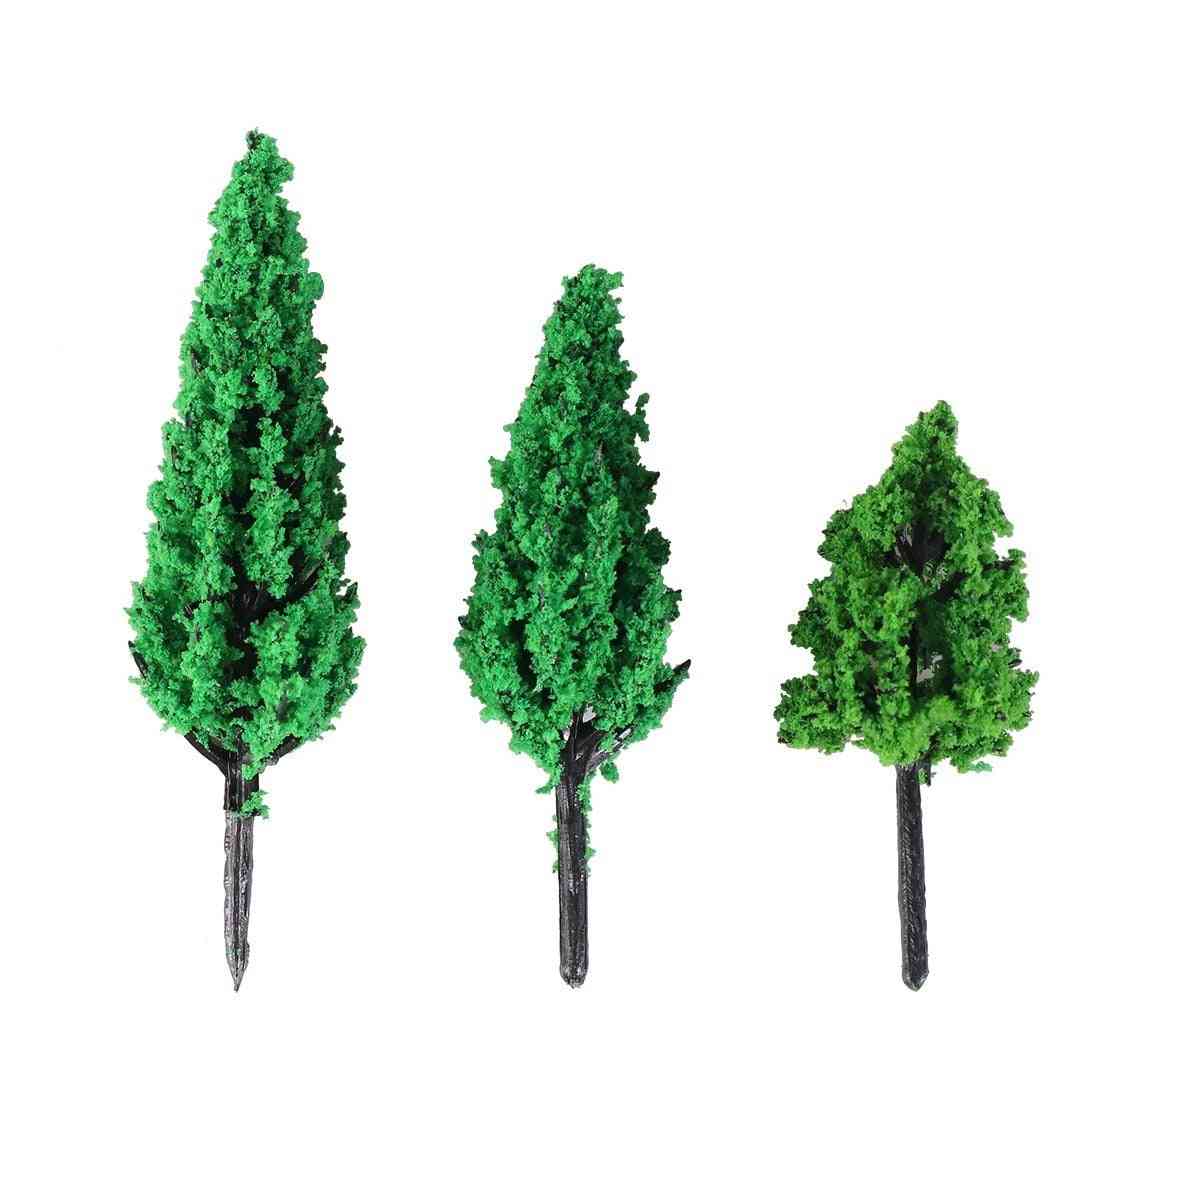 Puut puisto mänty poppeli metsä pagodi miniatyyri diorama mikro asettelu maisema sisustus miniatyyrit puut